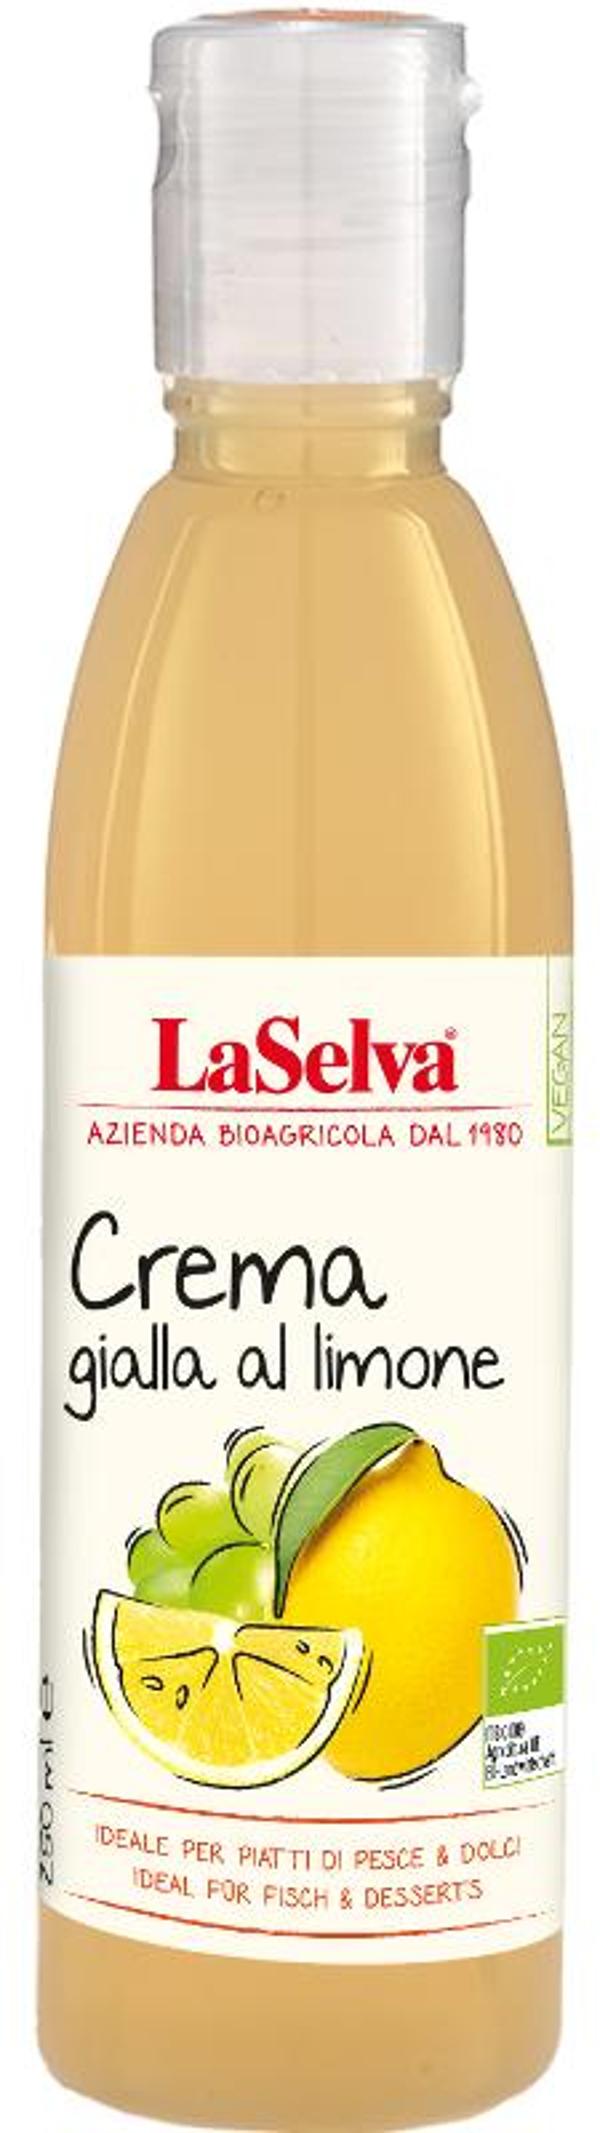 Produktfoto zu Helle Balsamico Creme mit Zitrone 250ml